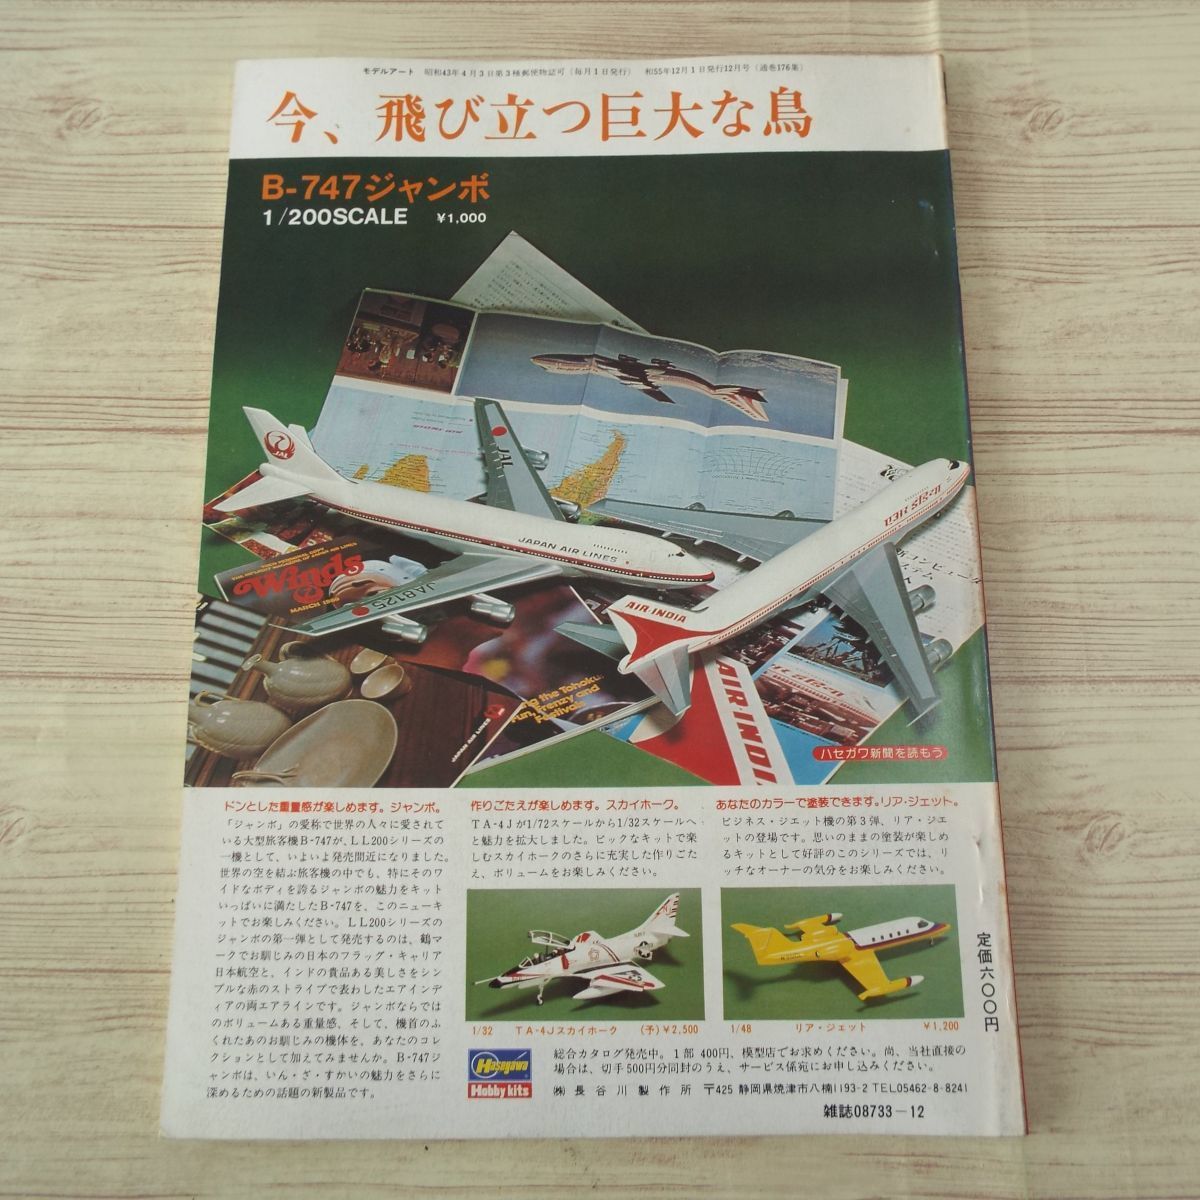 模型雑誌[モデルアート 1980年12月号] スケールモデル 内外新製品情報 戦艦榛名 ビュッカーBu-133Cユングマイスター_画像5